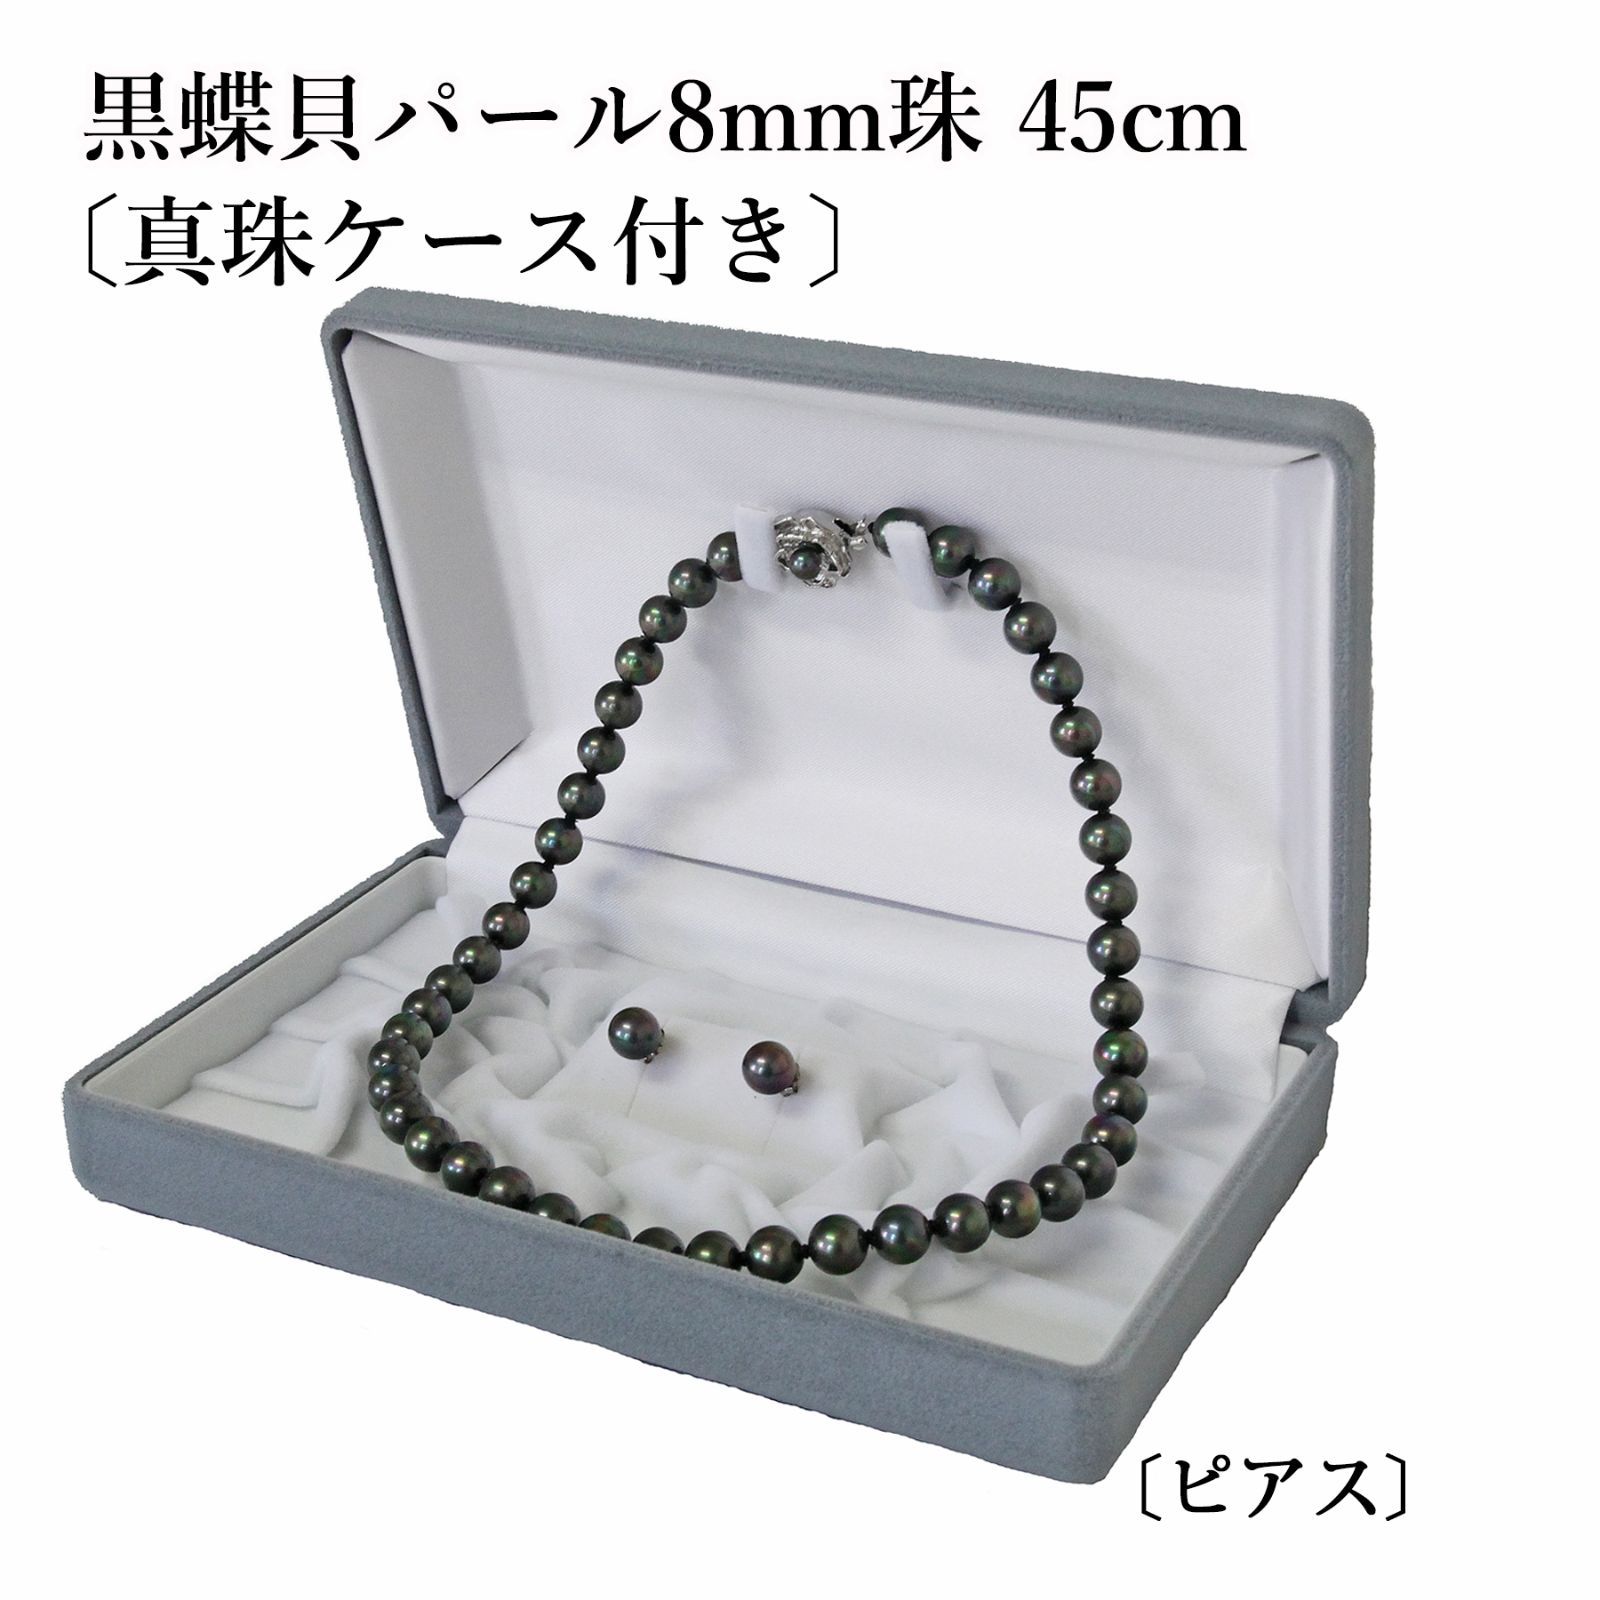 あなたと私の宝石箱] 黒真珠ネックレス & イヤリング or ピアスセット